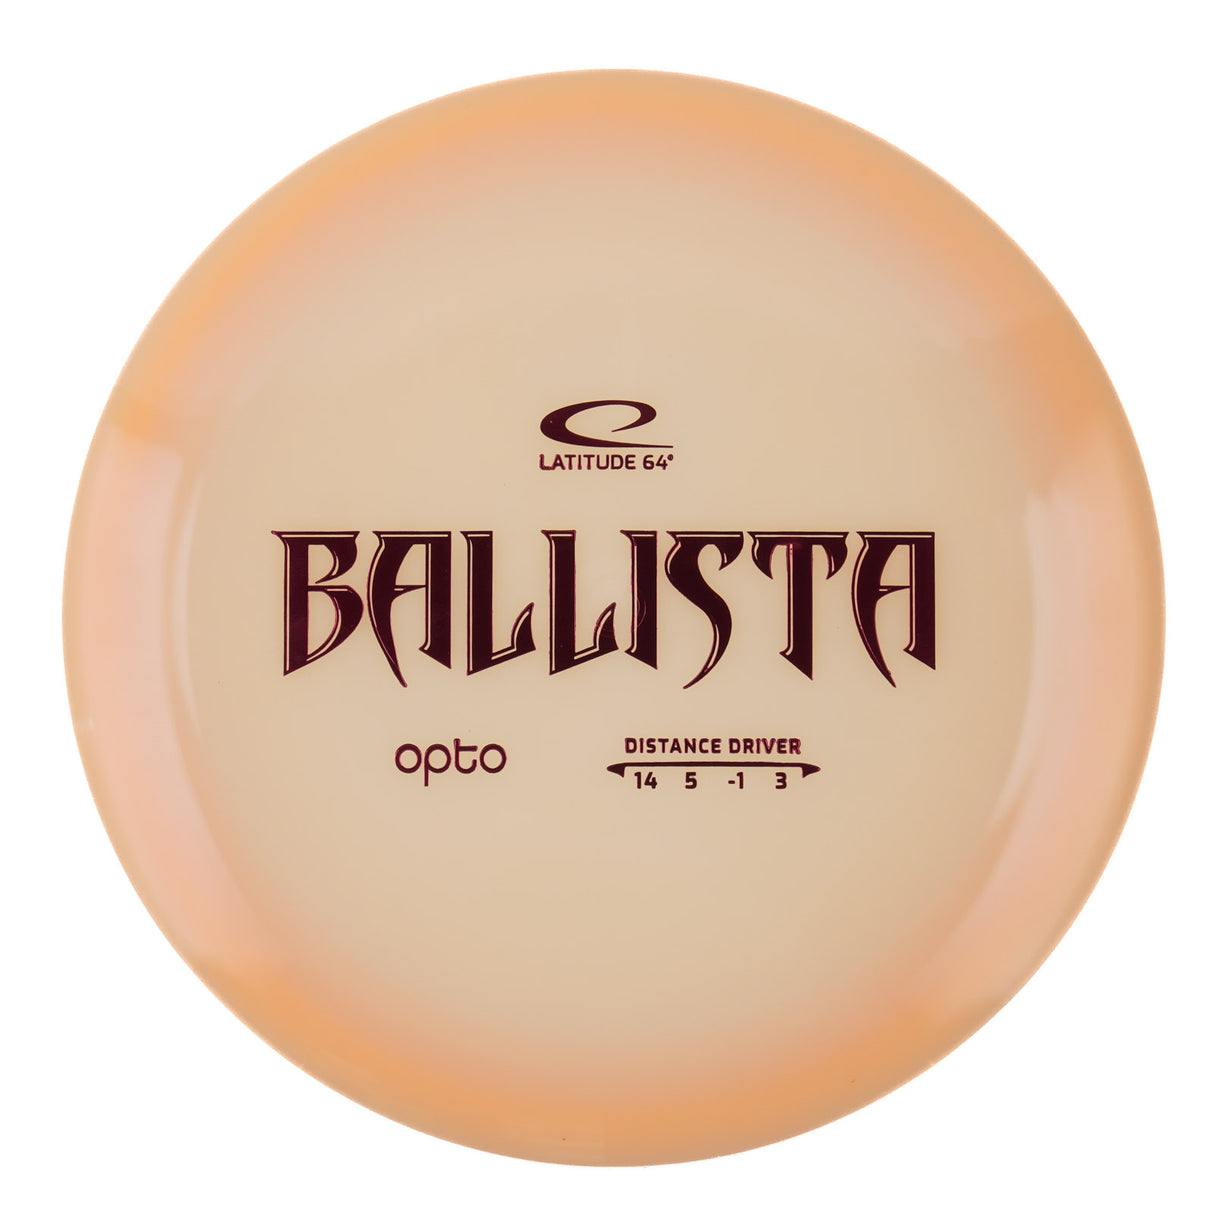 Latitude 64 Ballista - Opto 174g | Style 0003